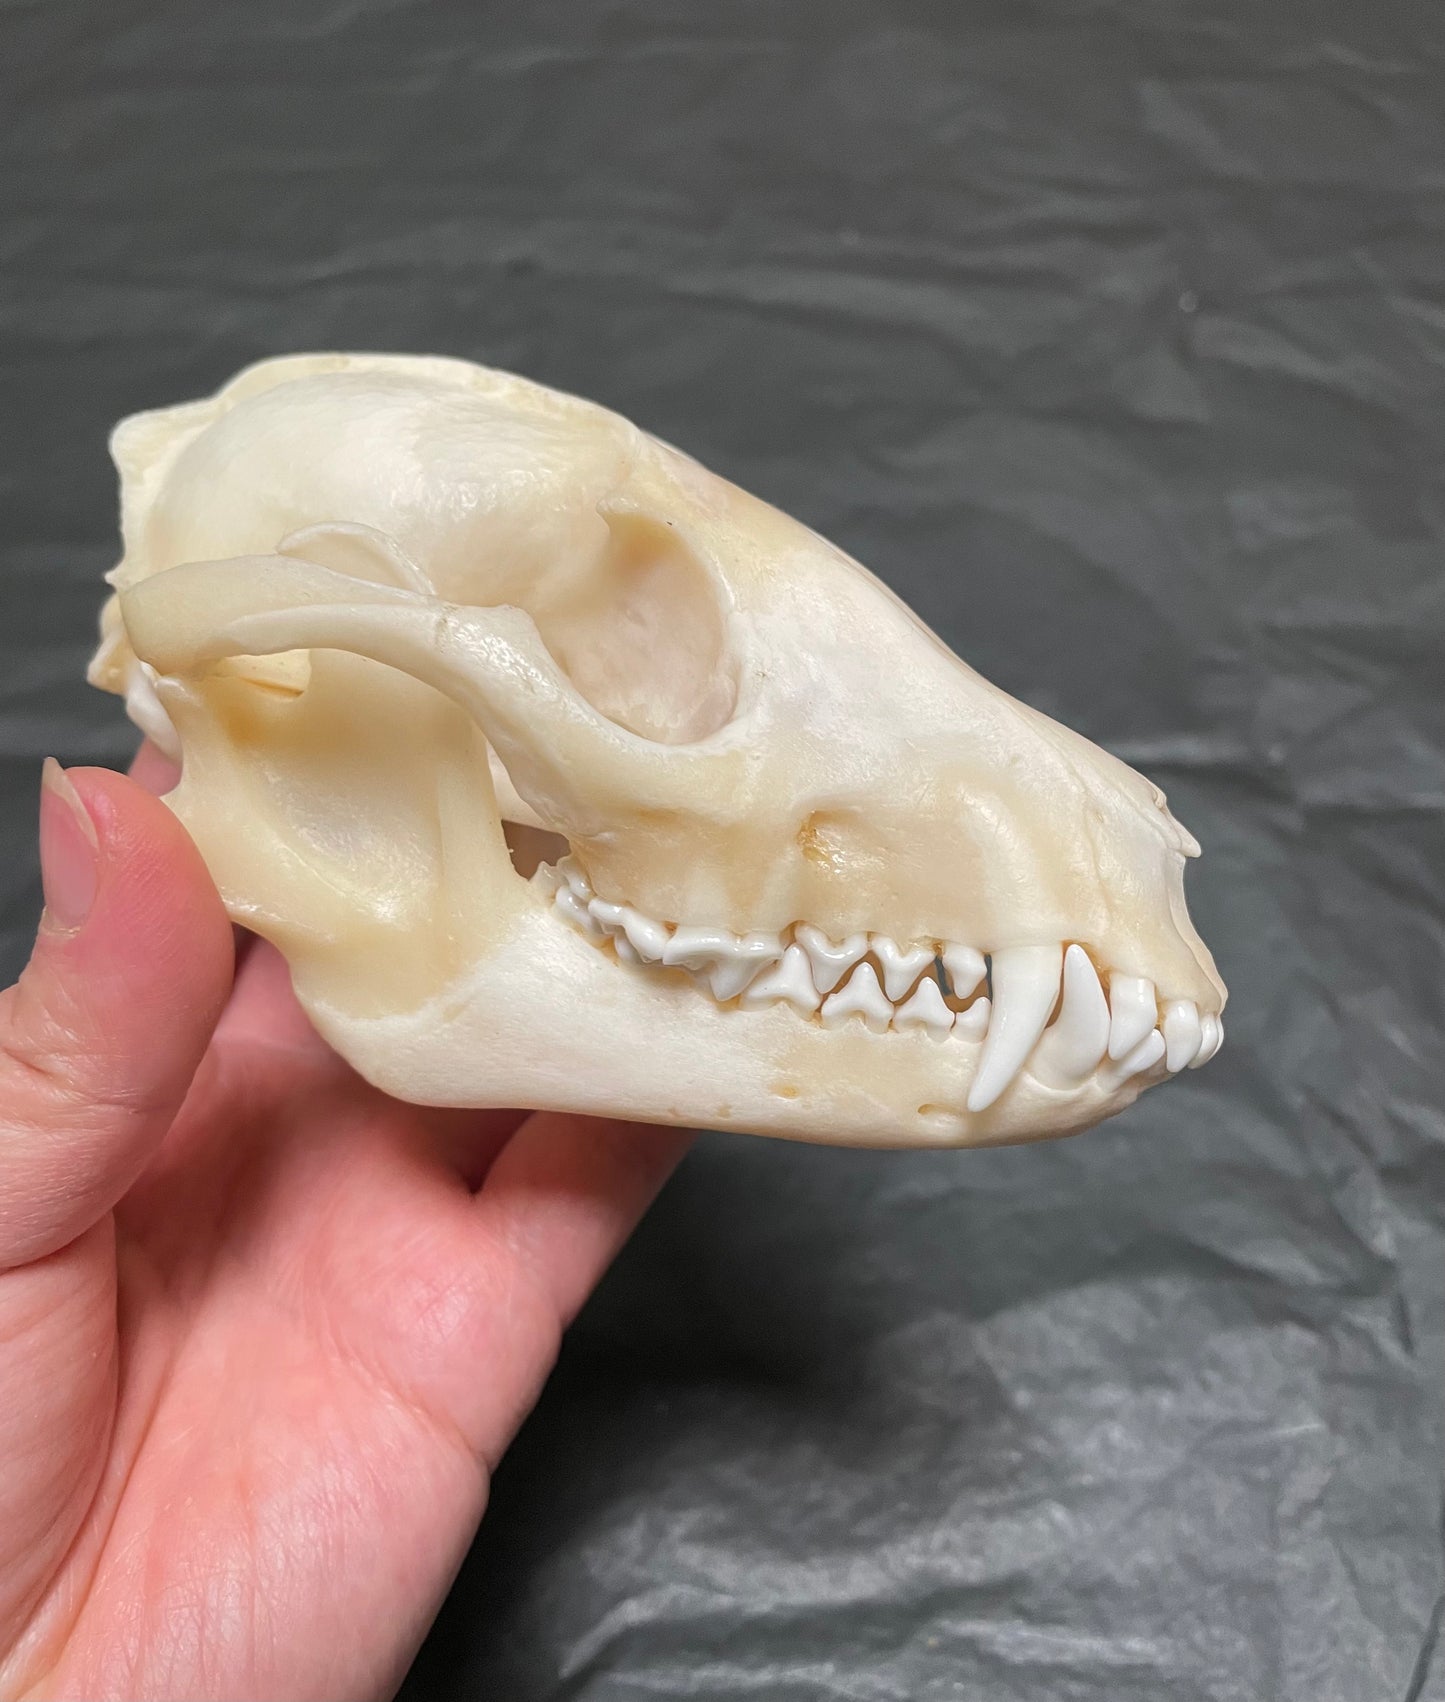 Raccoon Dog Skull